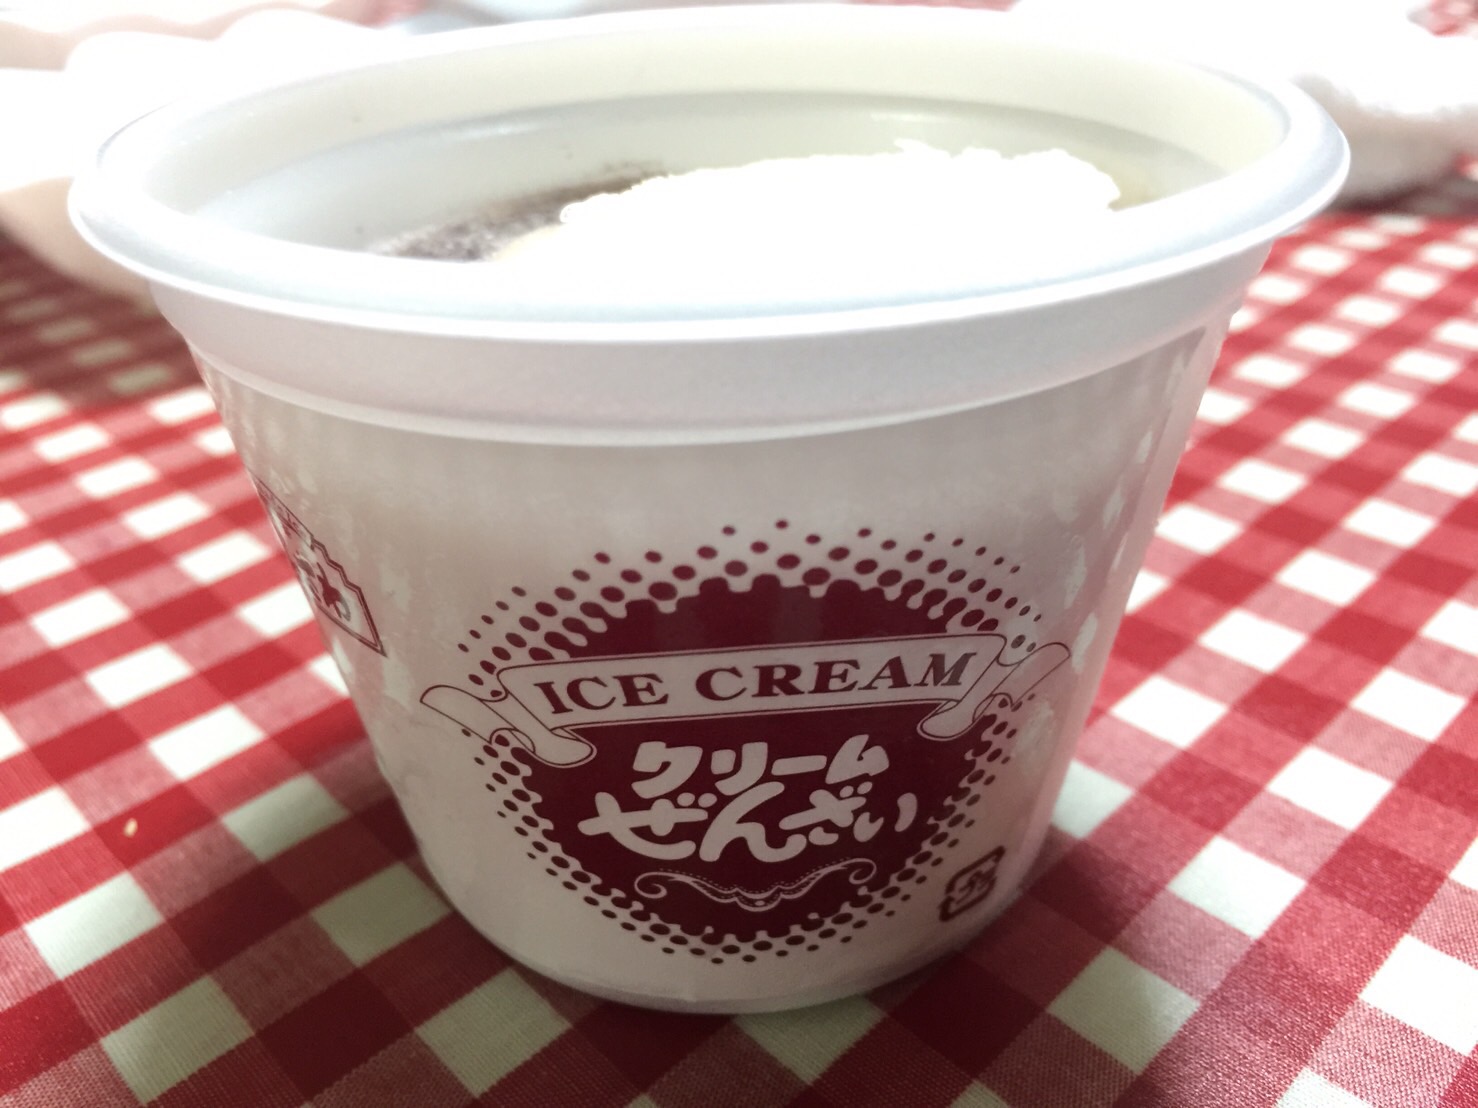  北海道産の小豆、大納言をじっくり煮込みほどよい甘さに味つけされたぜんざいに、アイスクリームが入っています。